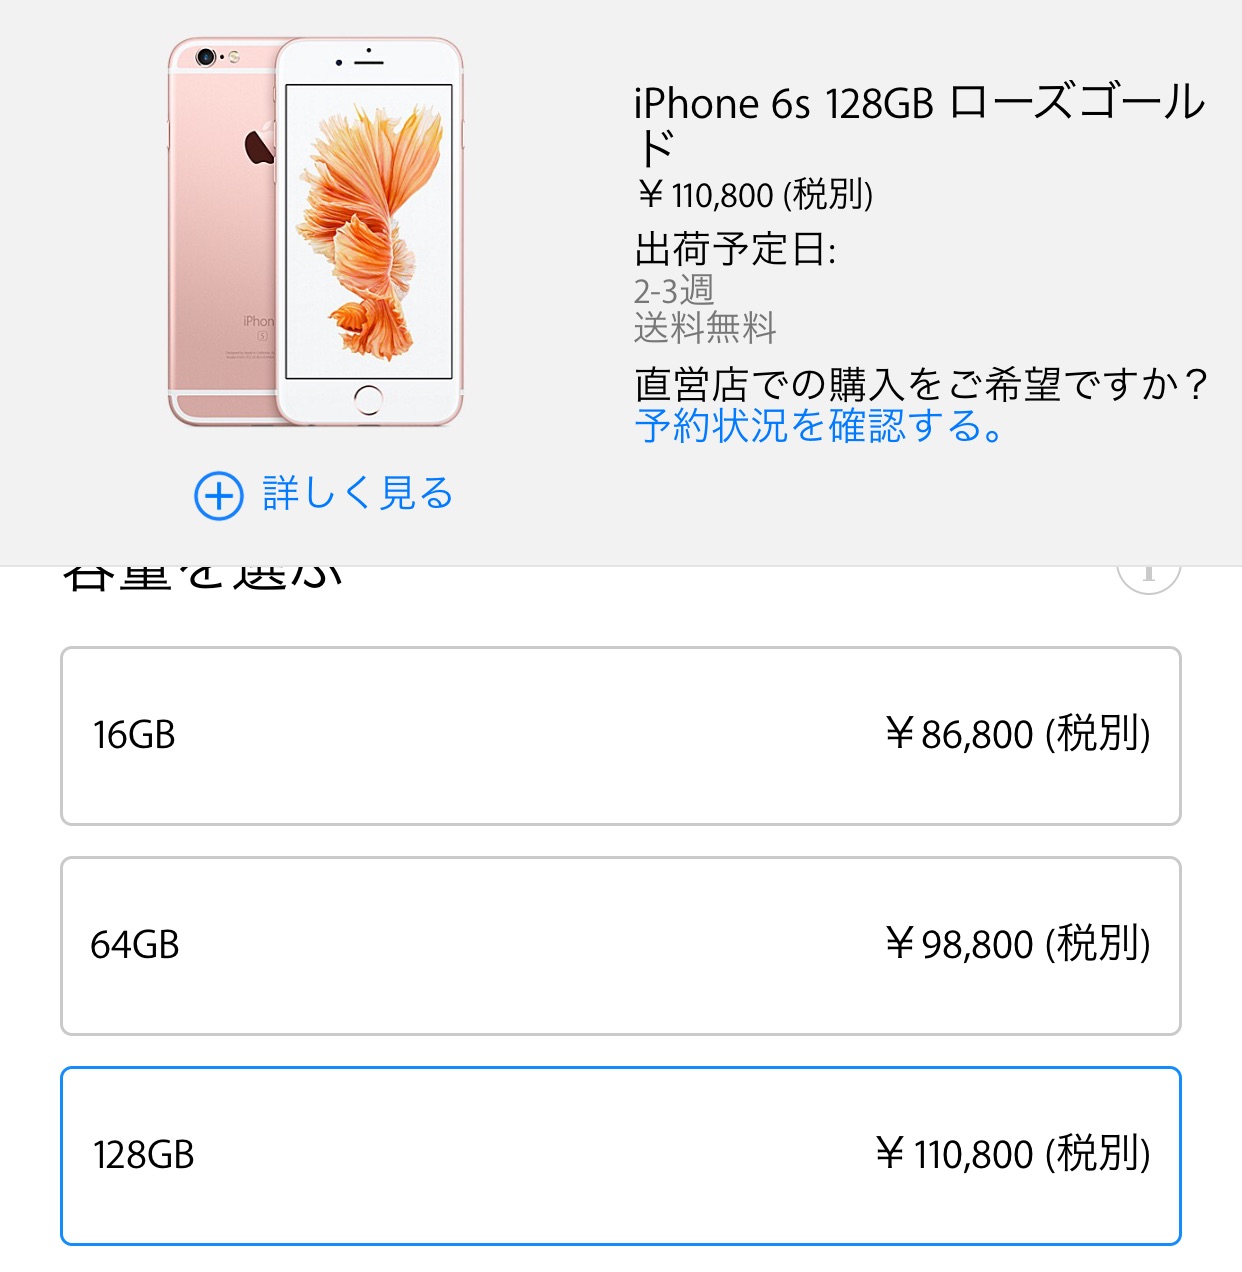 ｢iPhone 6s｣シリーズのローズゴールドモデル、Apple Storeでは受付開始から約20分で初回出荷分が完売